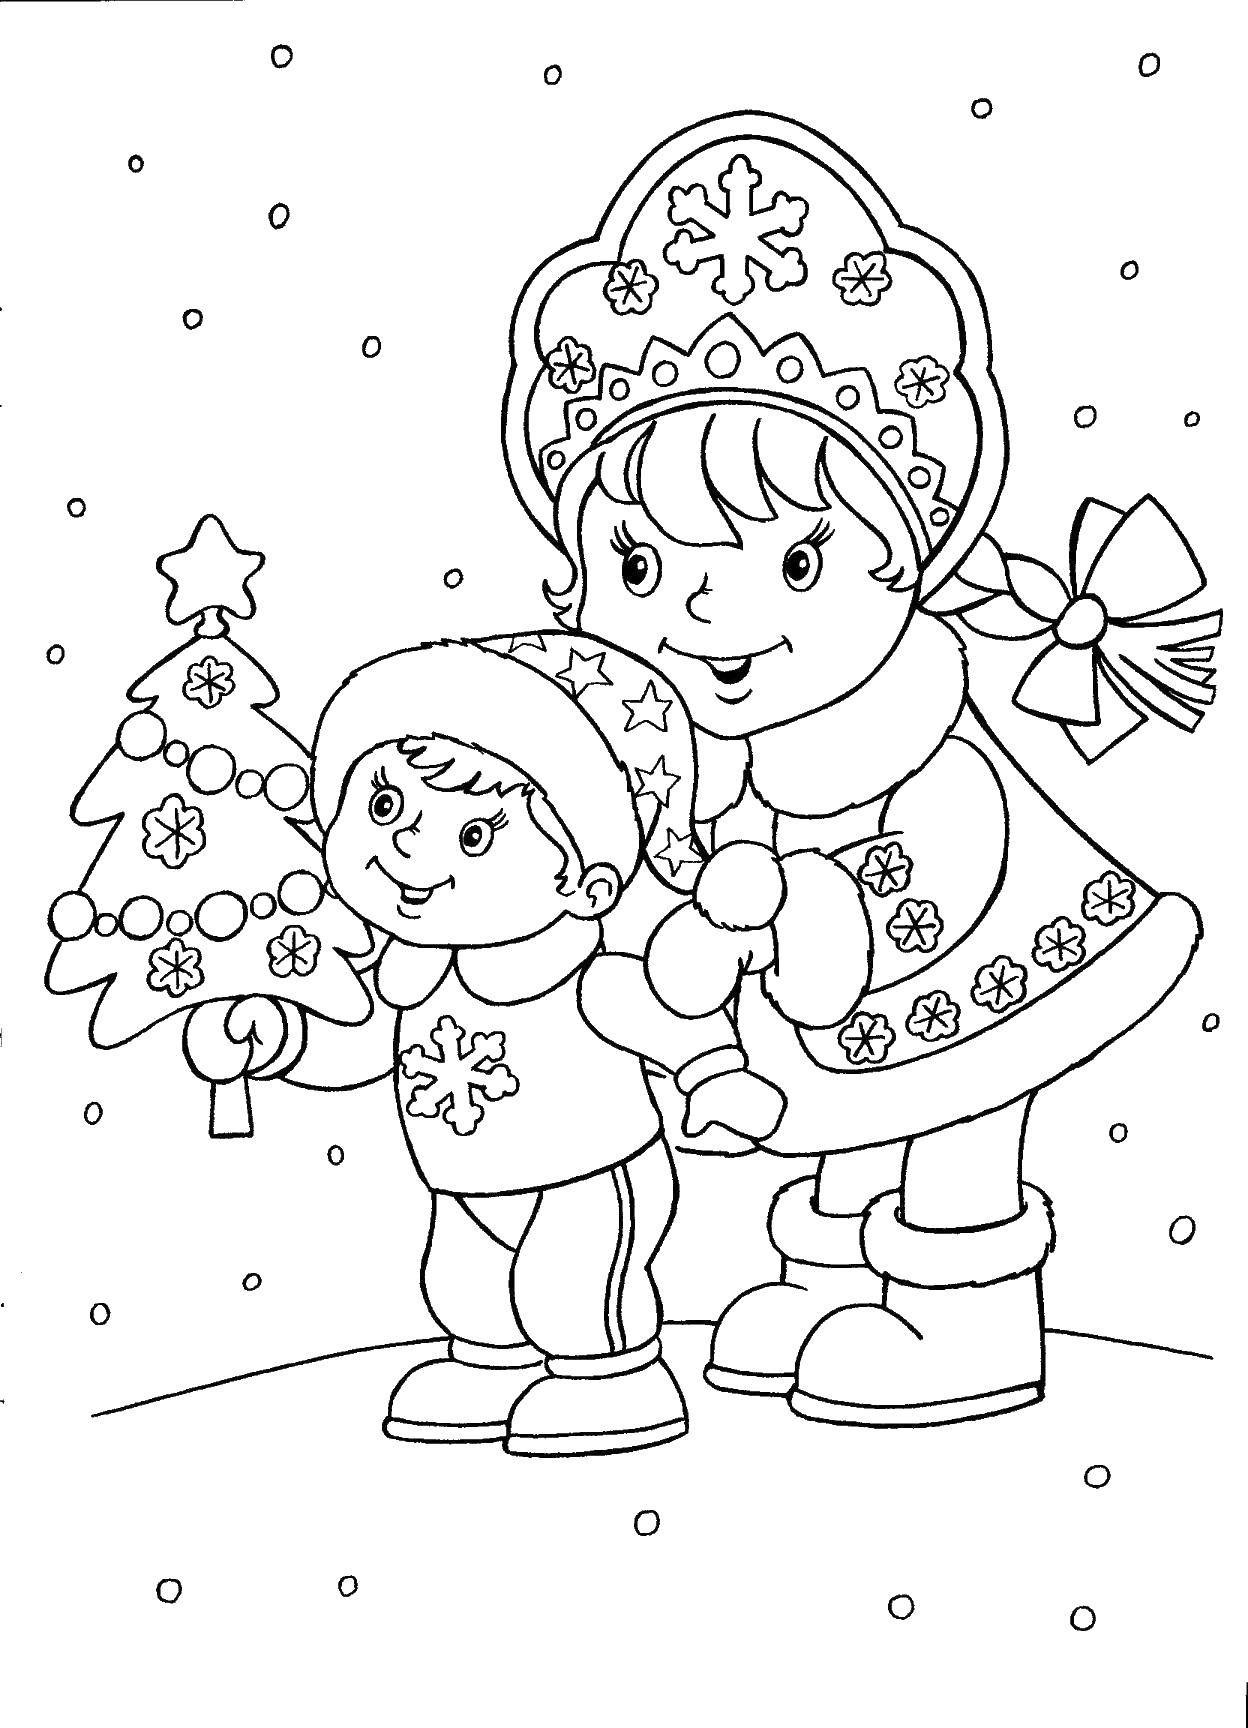 Раскраска с снегурочкой в снежном пейзаже для детей (снегурочка, дети)